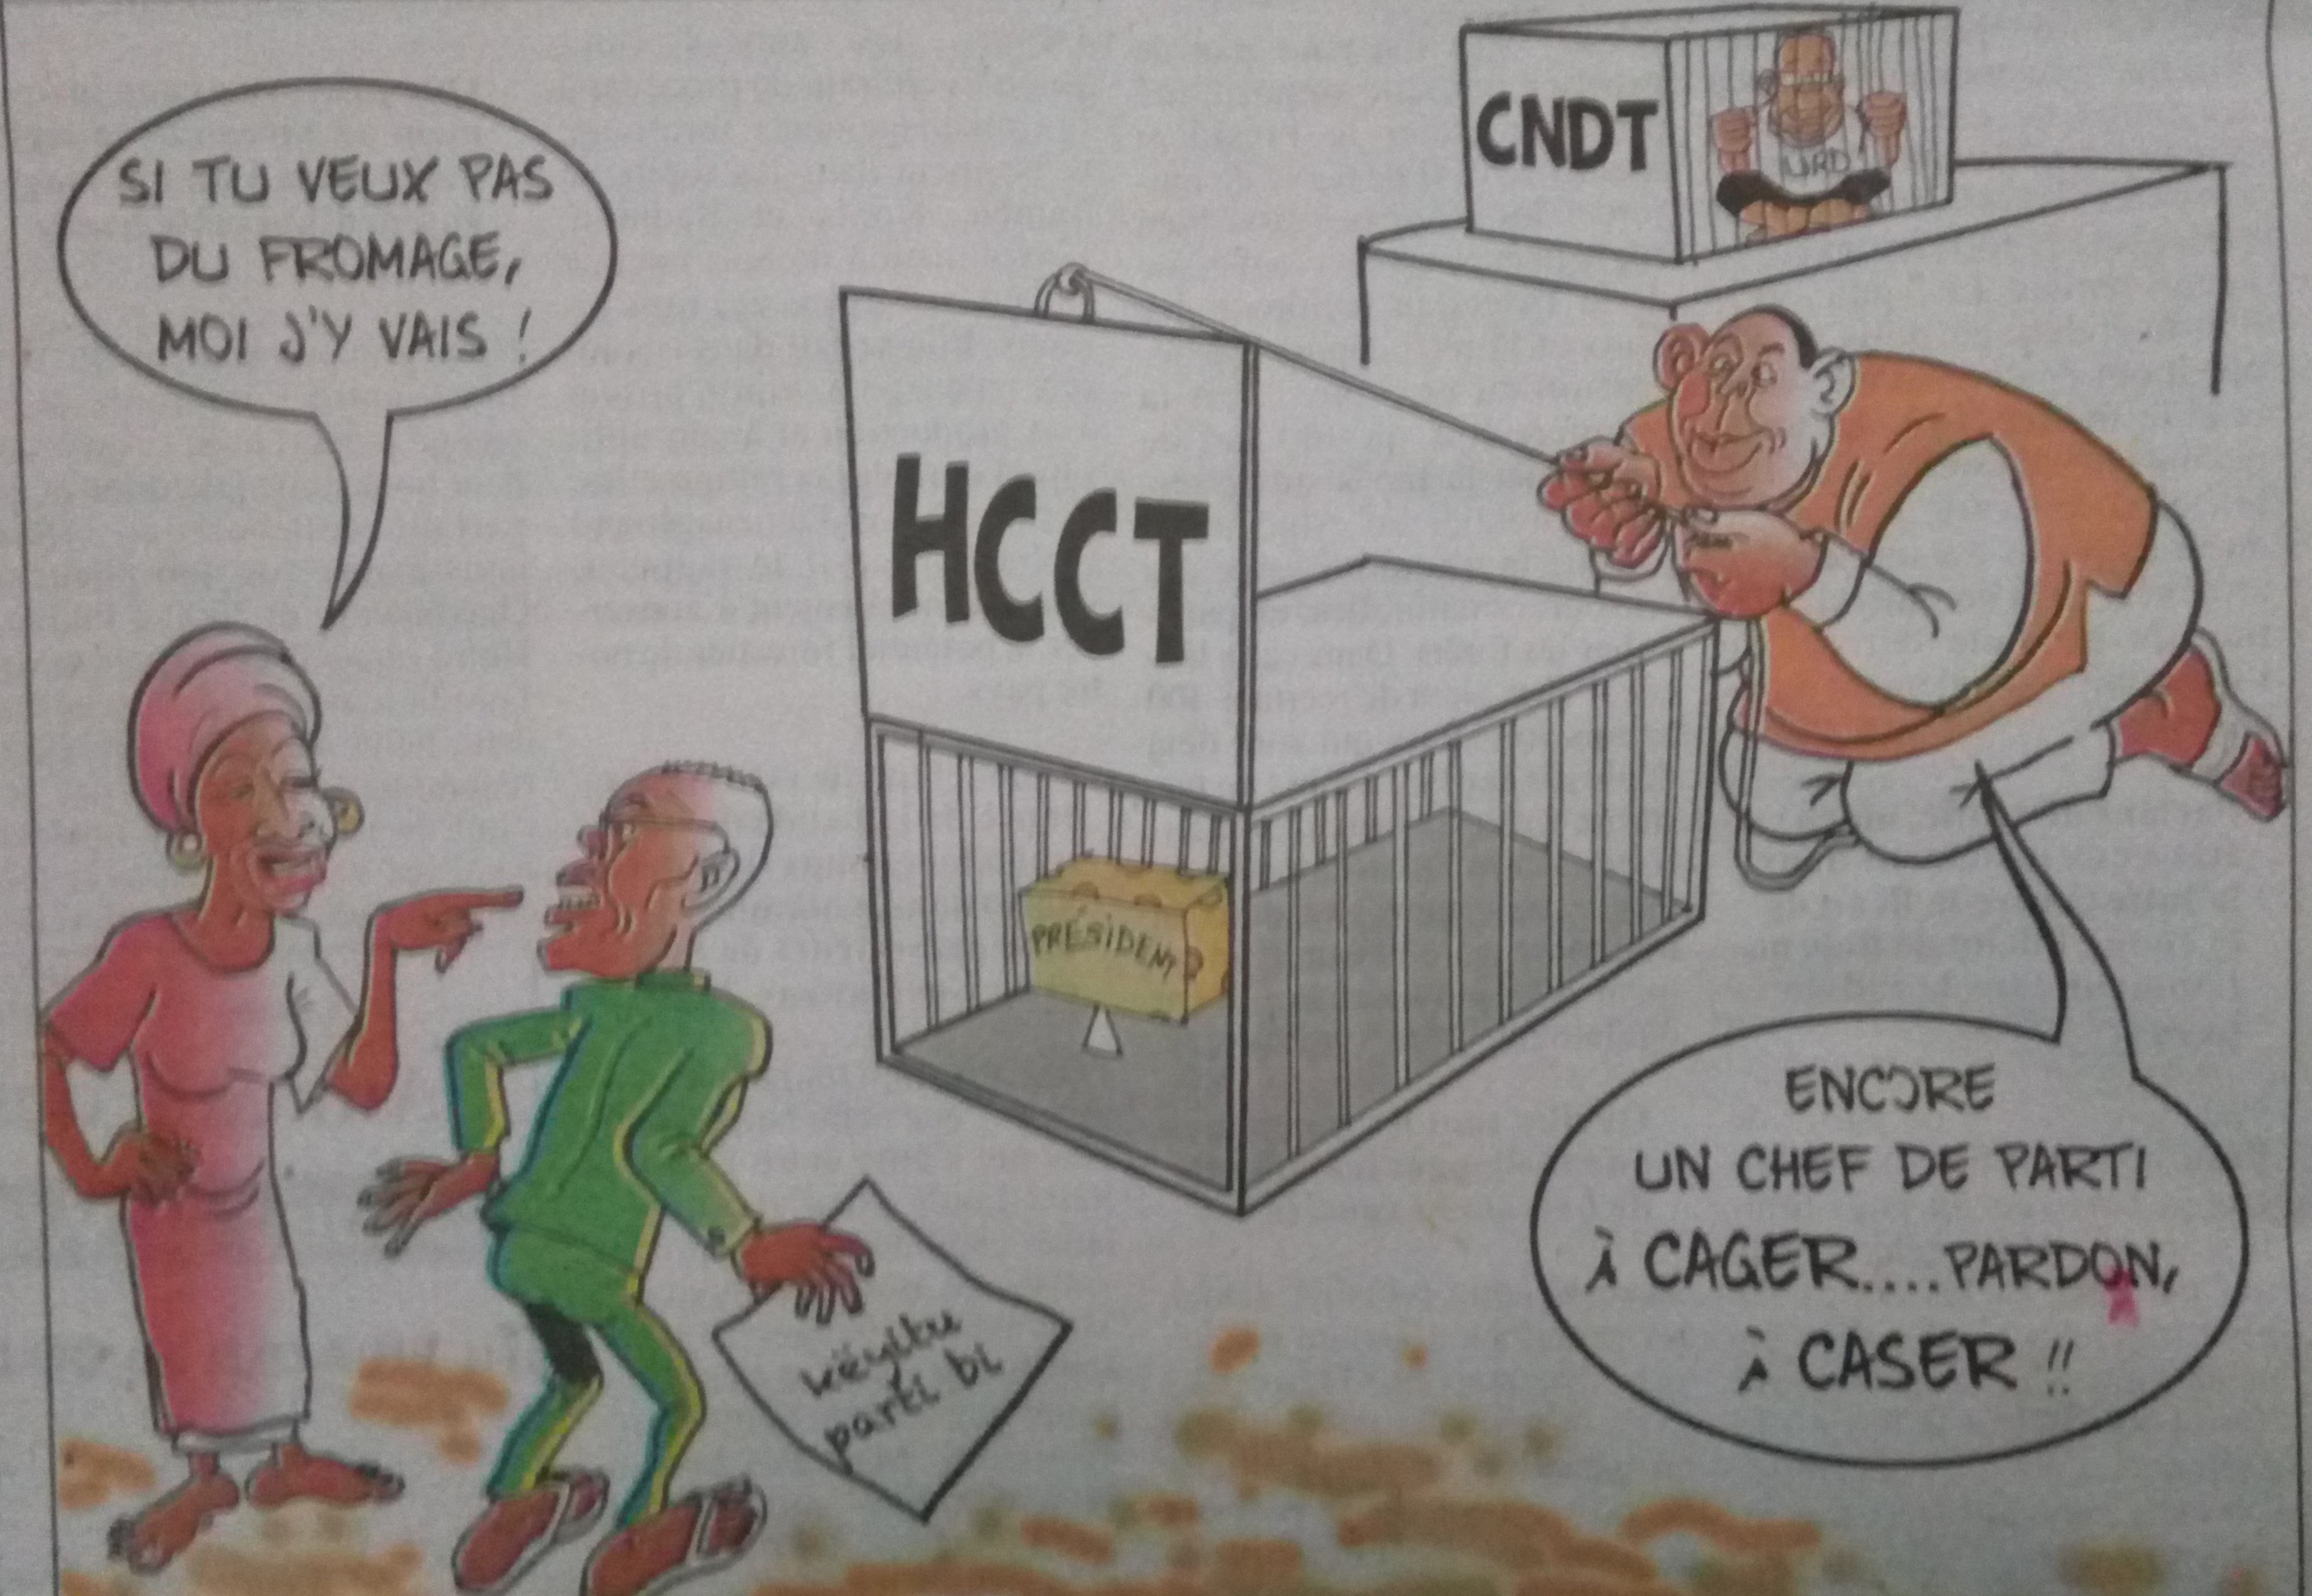 Le Hcct pour "cager" des chefs de parti - Par Odia